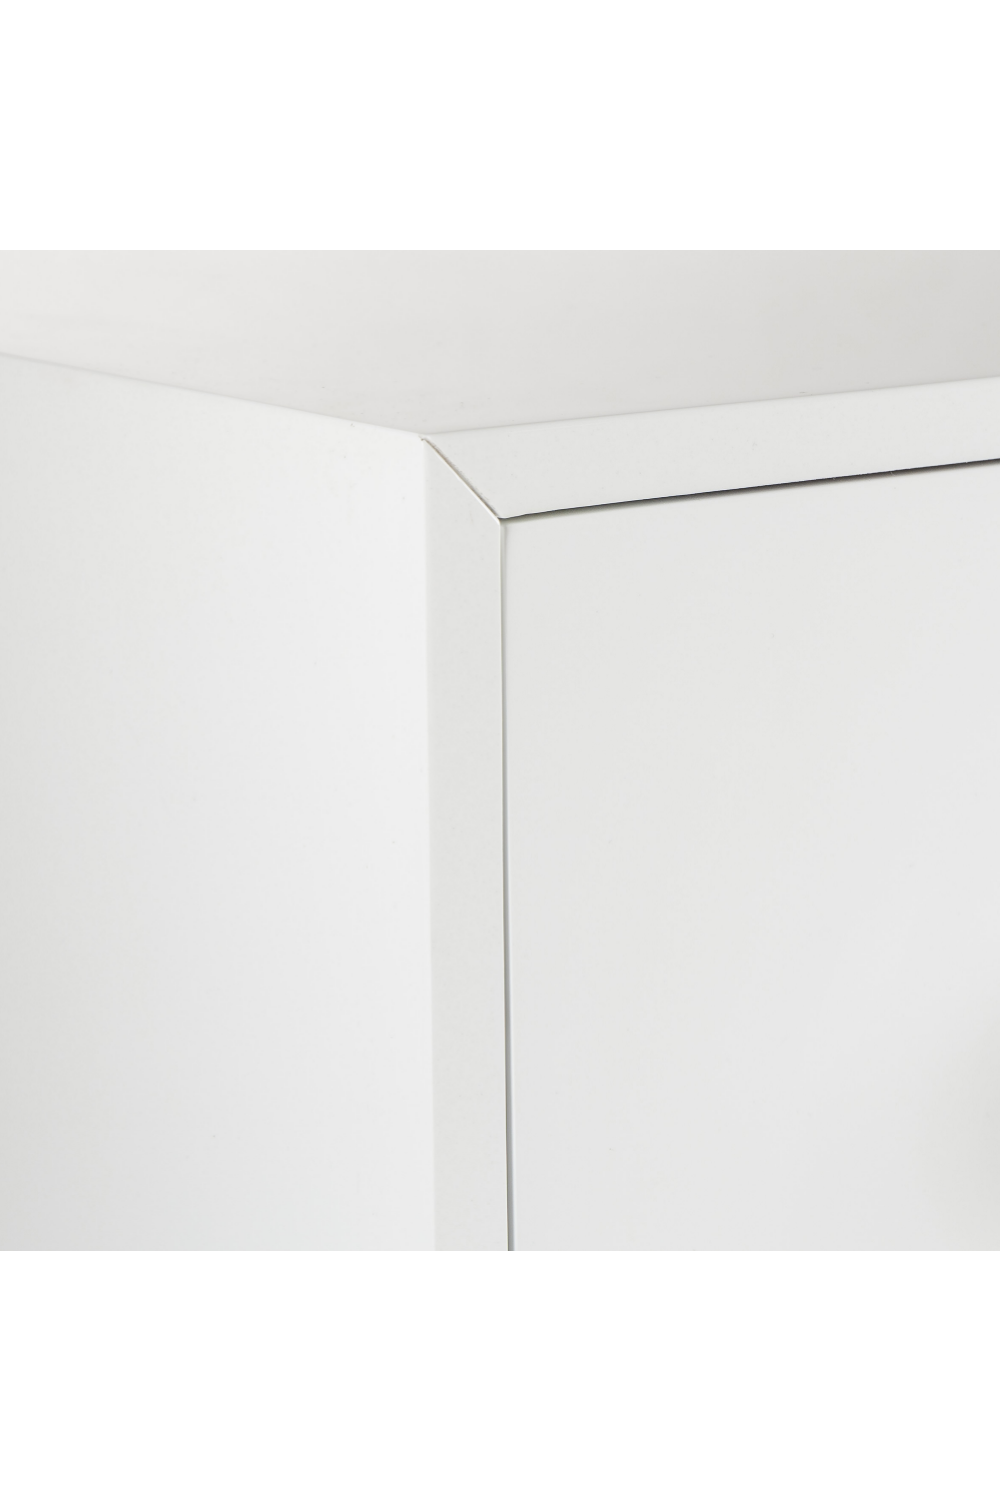 White Contemporary Dresser | Andrew Martin Formal | Oroa.com